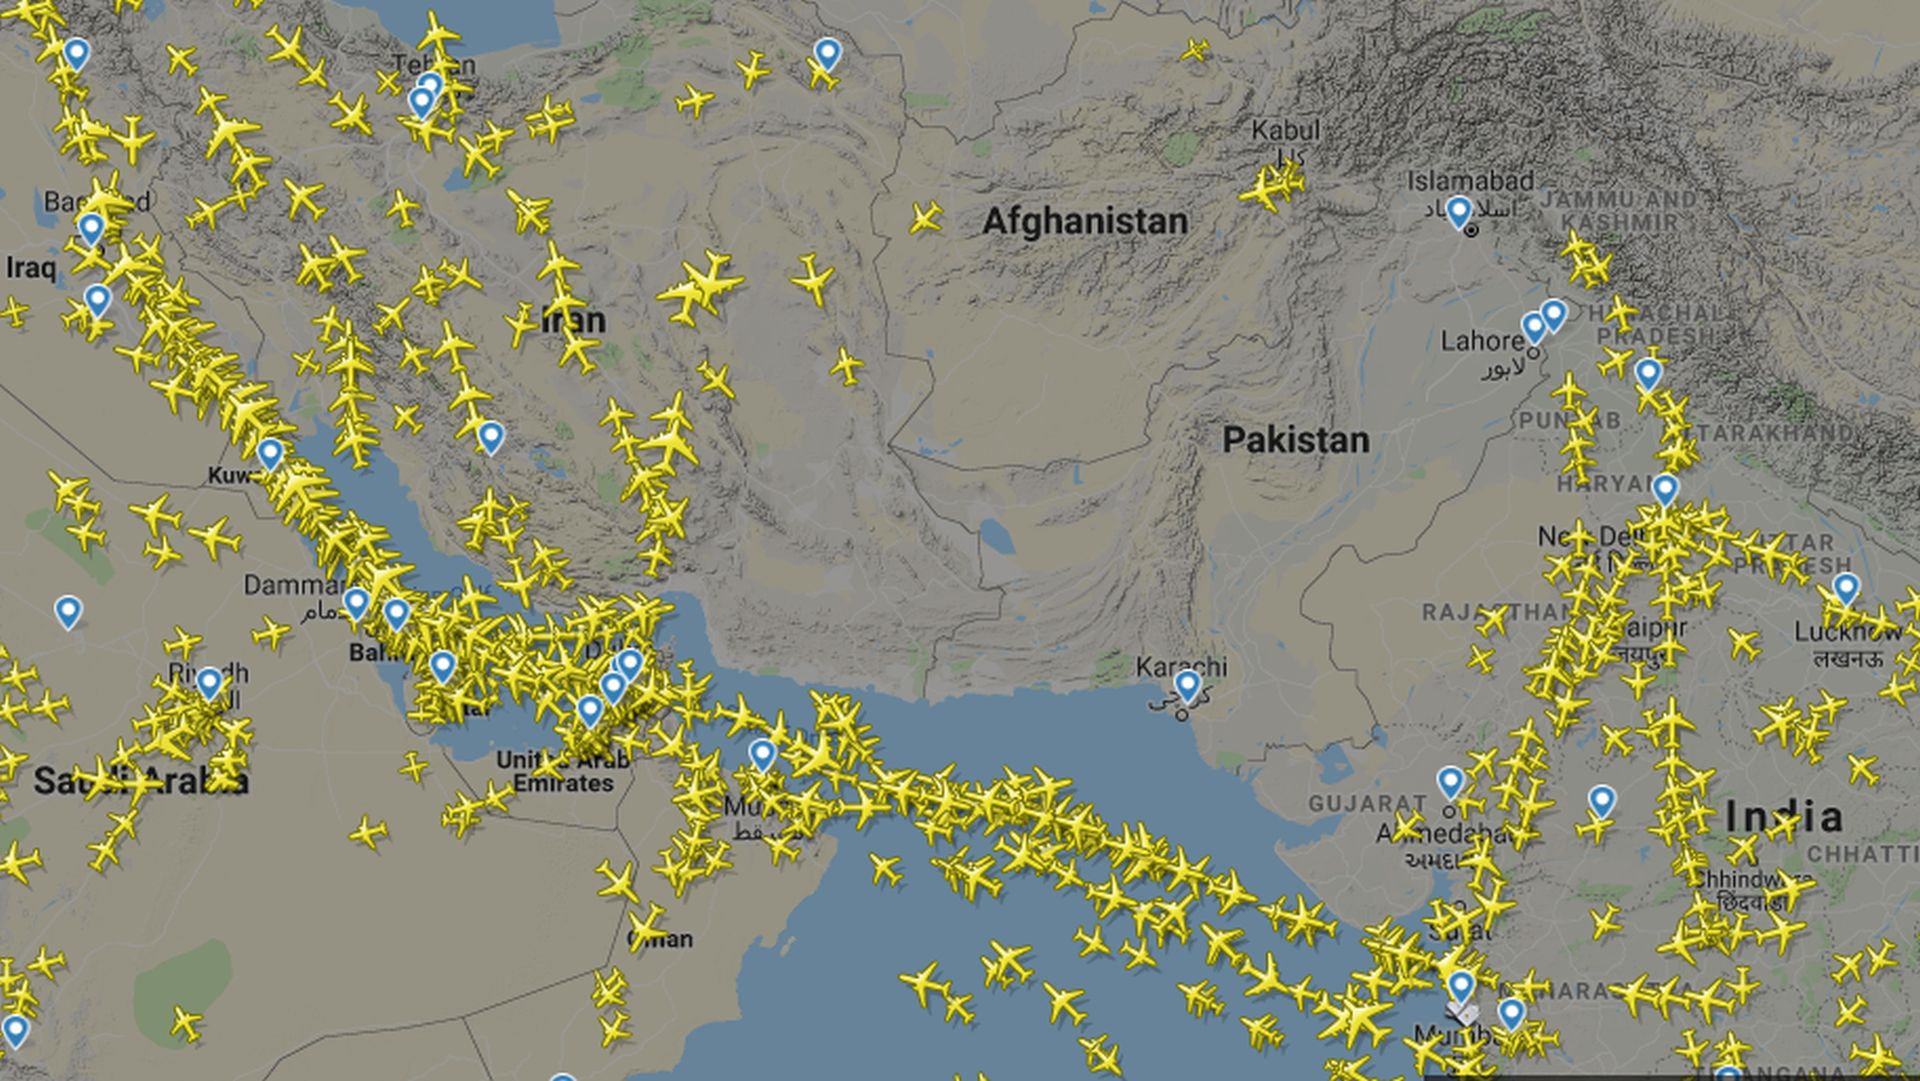 Vzdušný prostor nad Pákistánem v únoru 2019 po jeho uzavření. Foto: Flightradar24.com